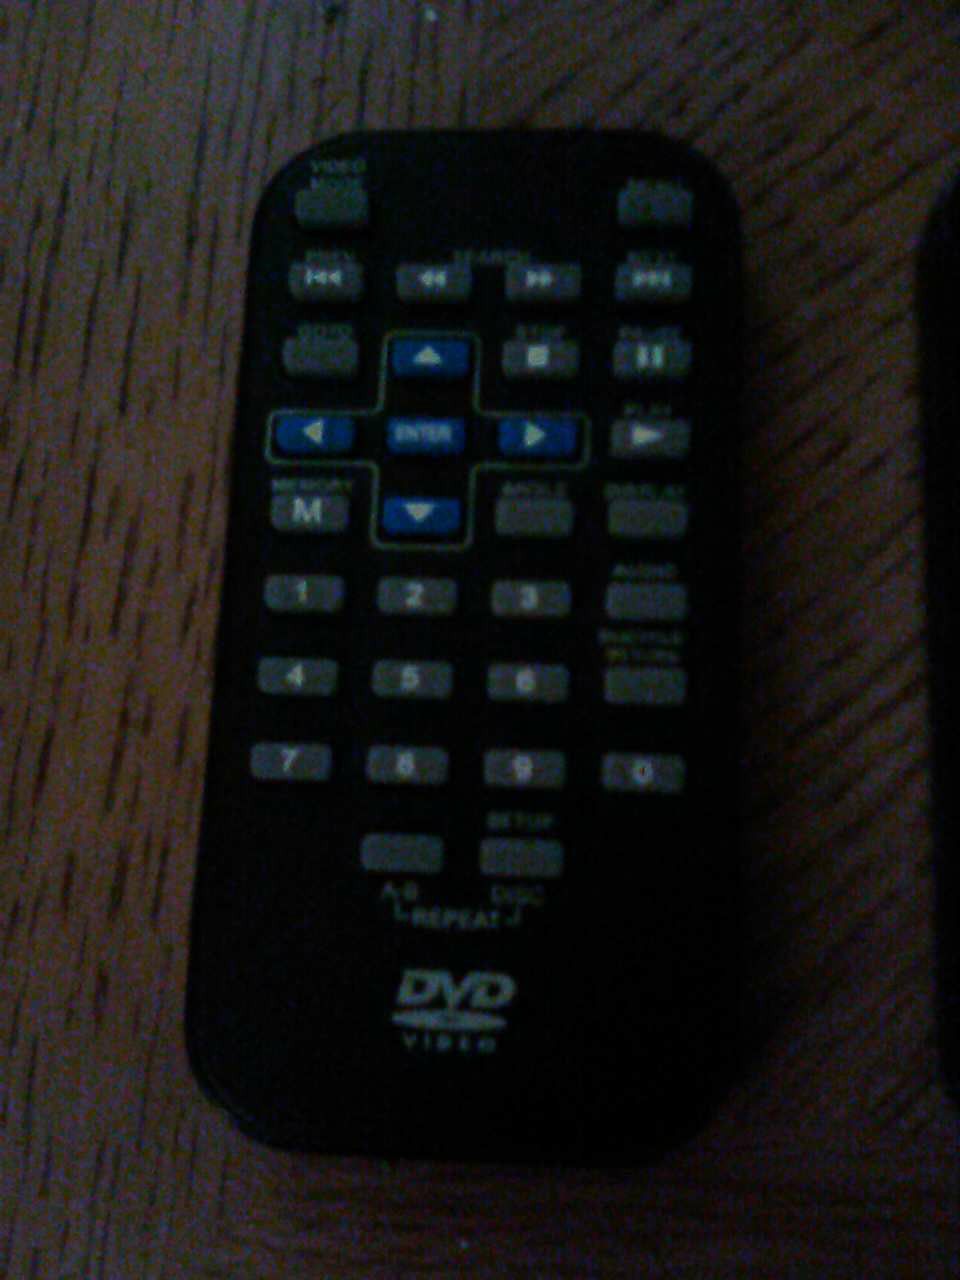 Personnel DVD remote